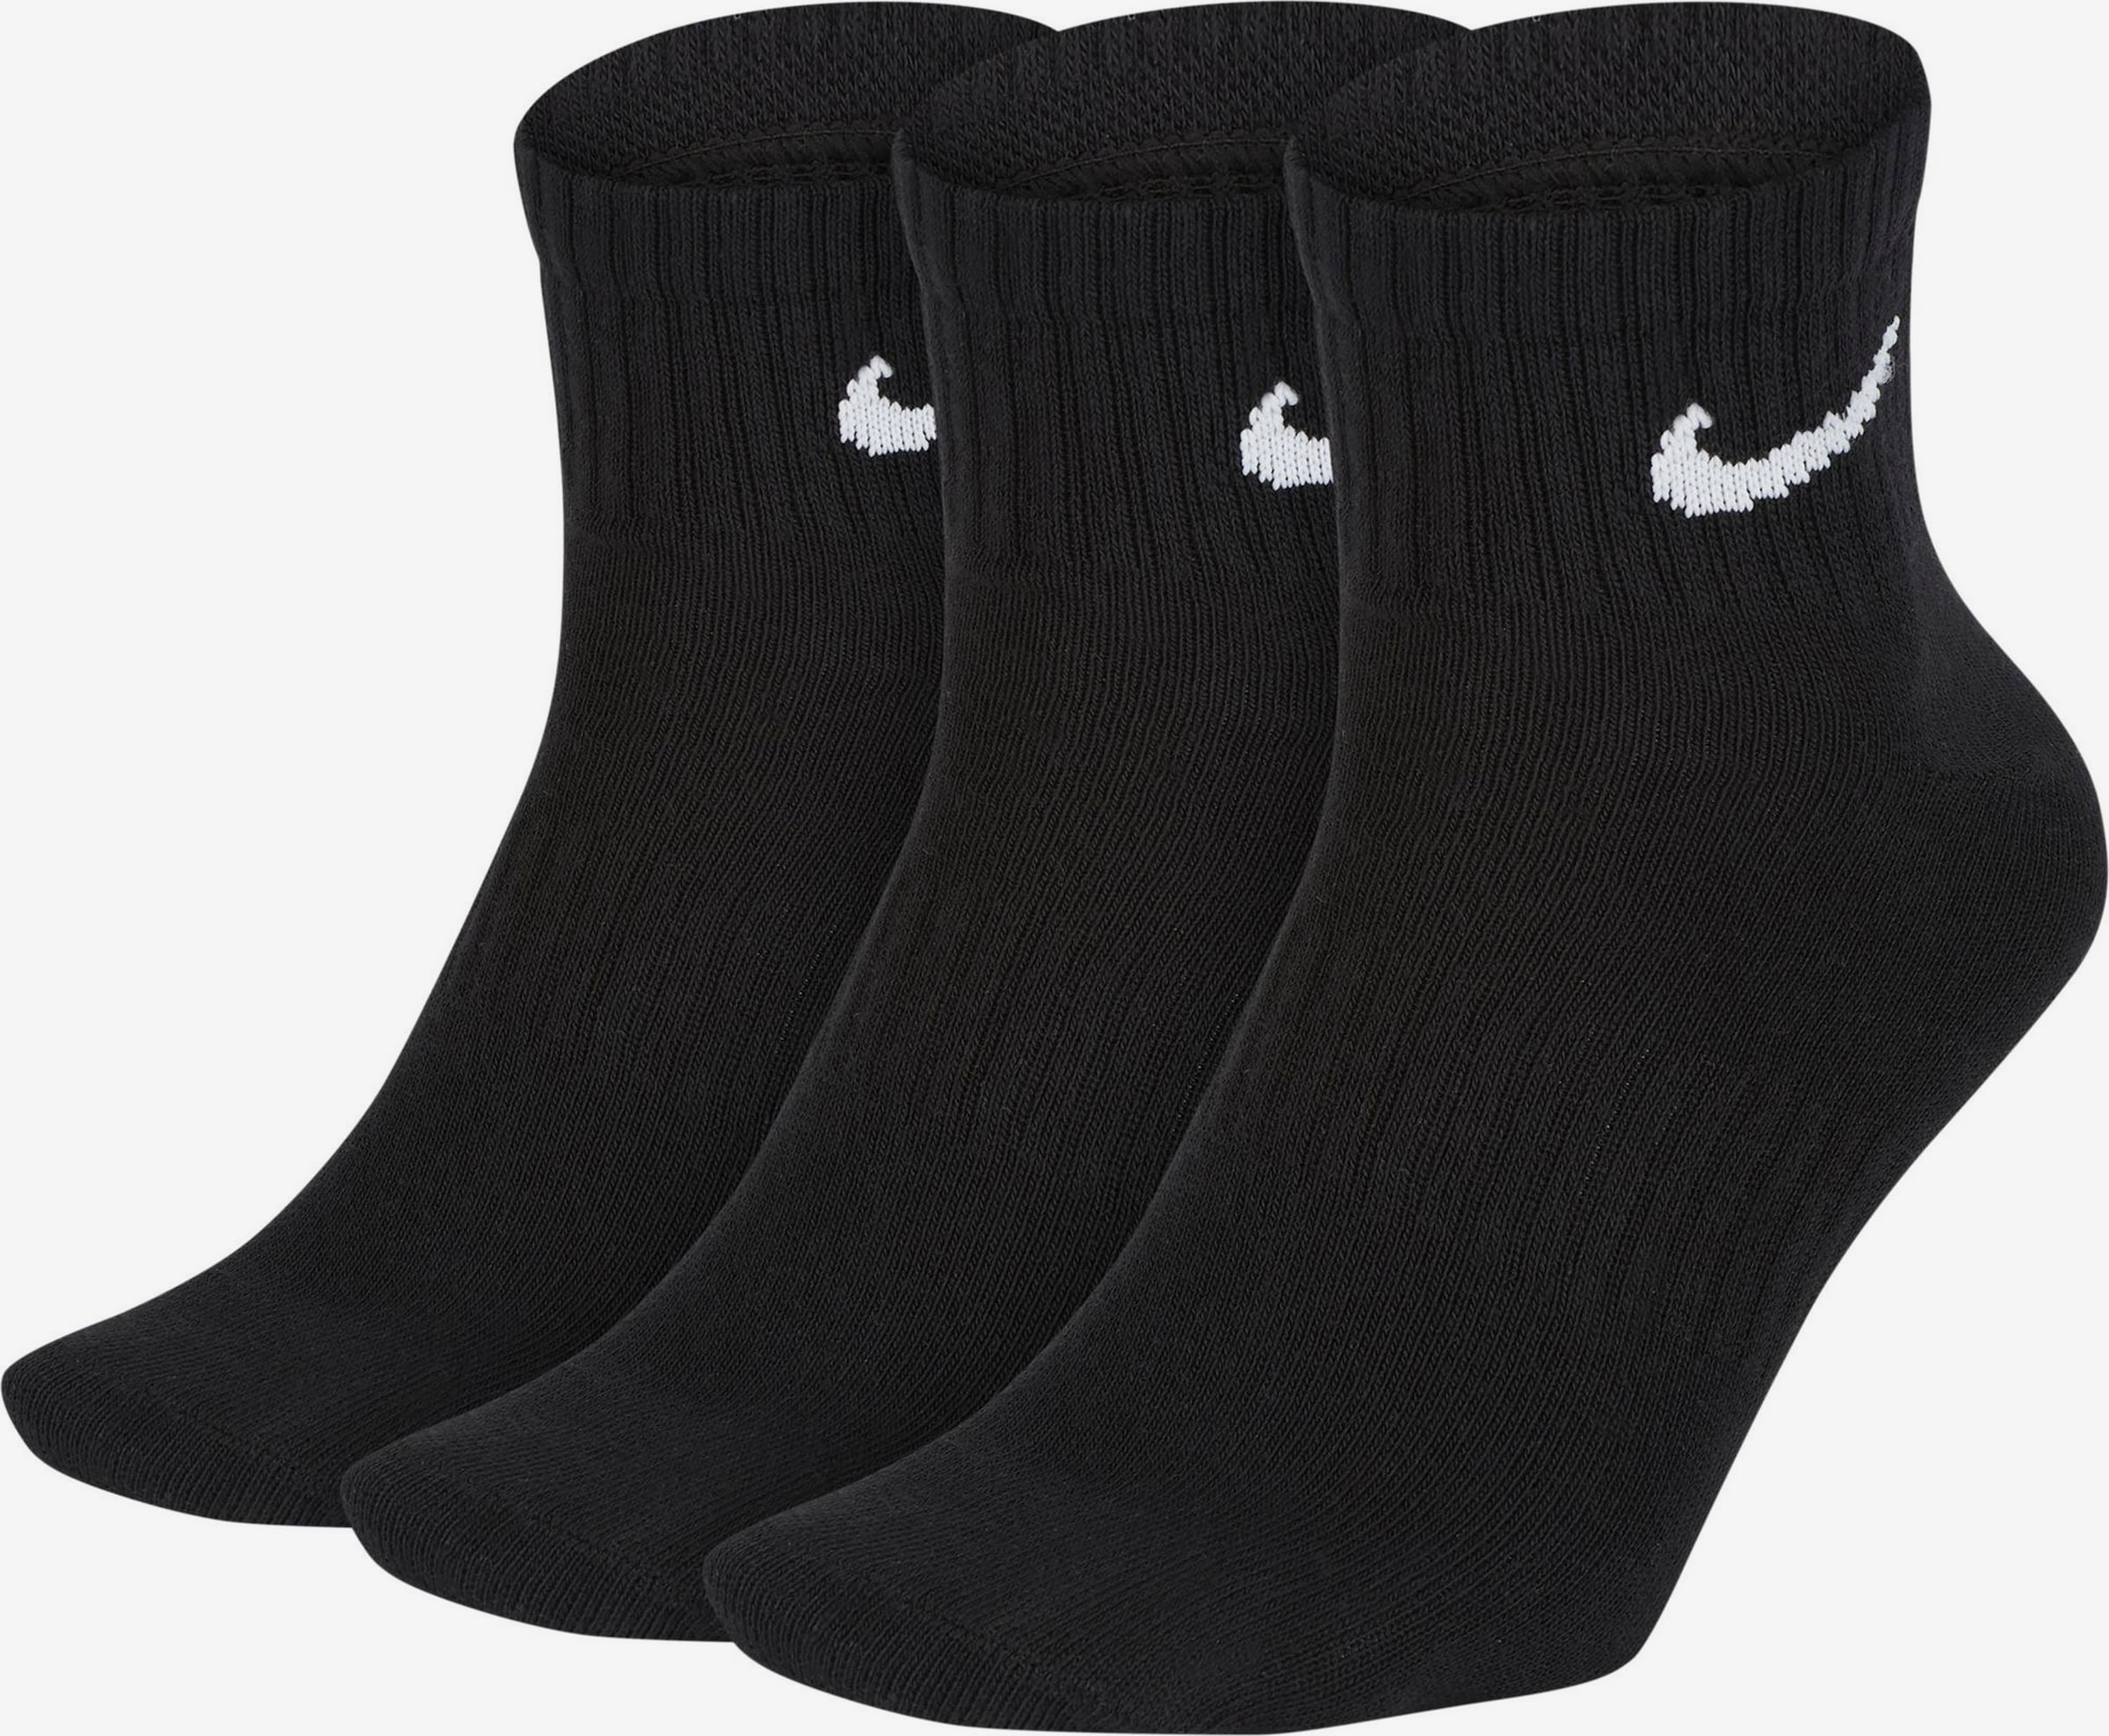 Носки найк короткие. Носки Nike everyday Lightweight. Носки Nike everyday Cushioned Ankle 3-Pack. Sx7677-010 носки найк черные. Носки Nike everyday Lightweight, 3 пары.